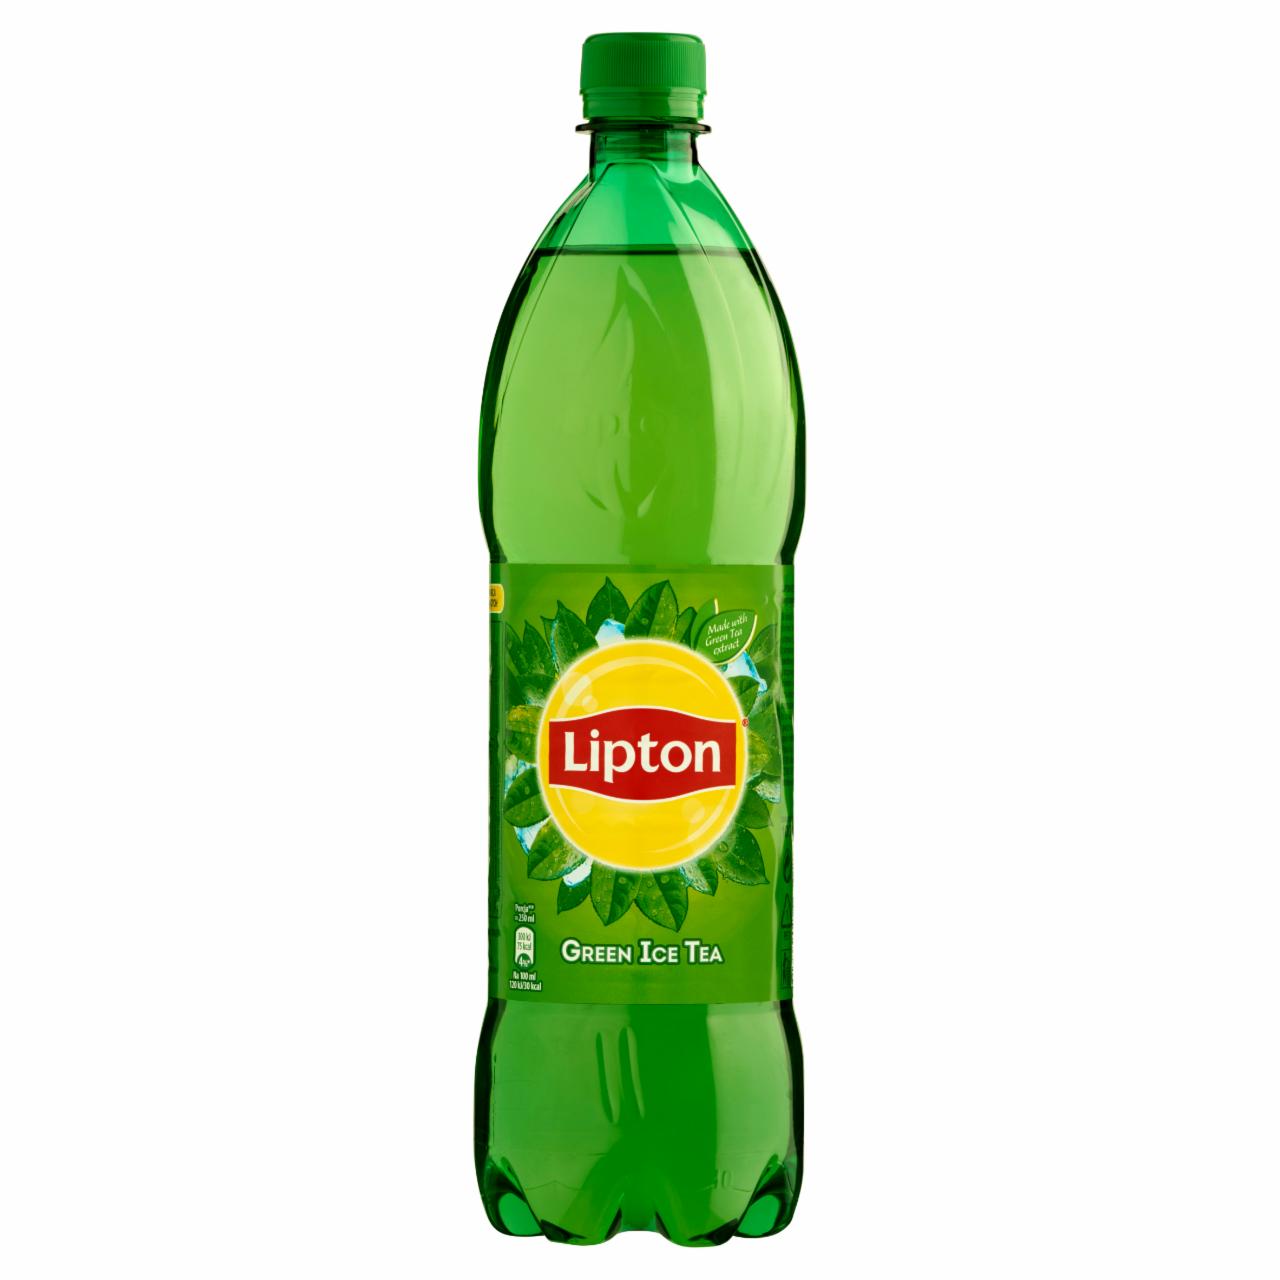 Képek - Green ice tea Lipton